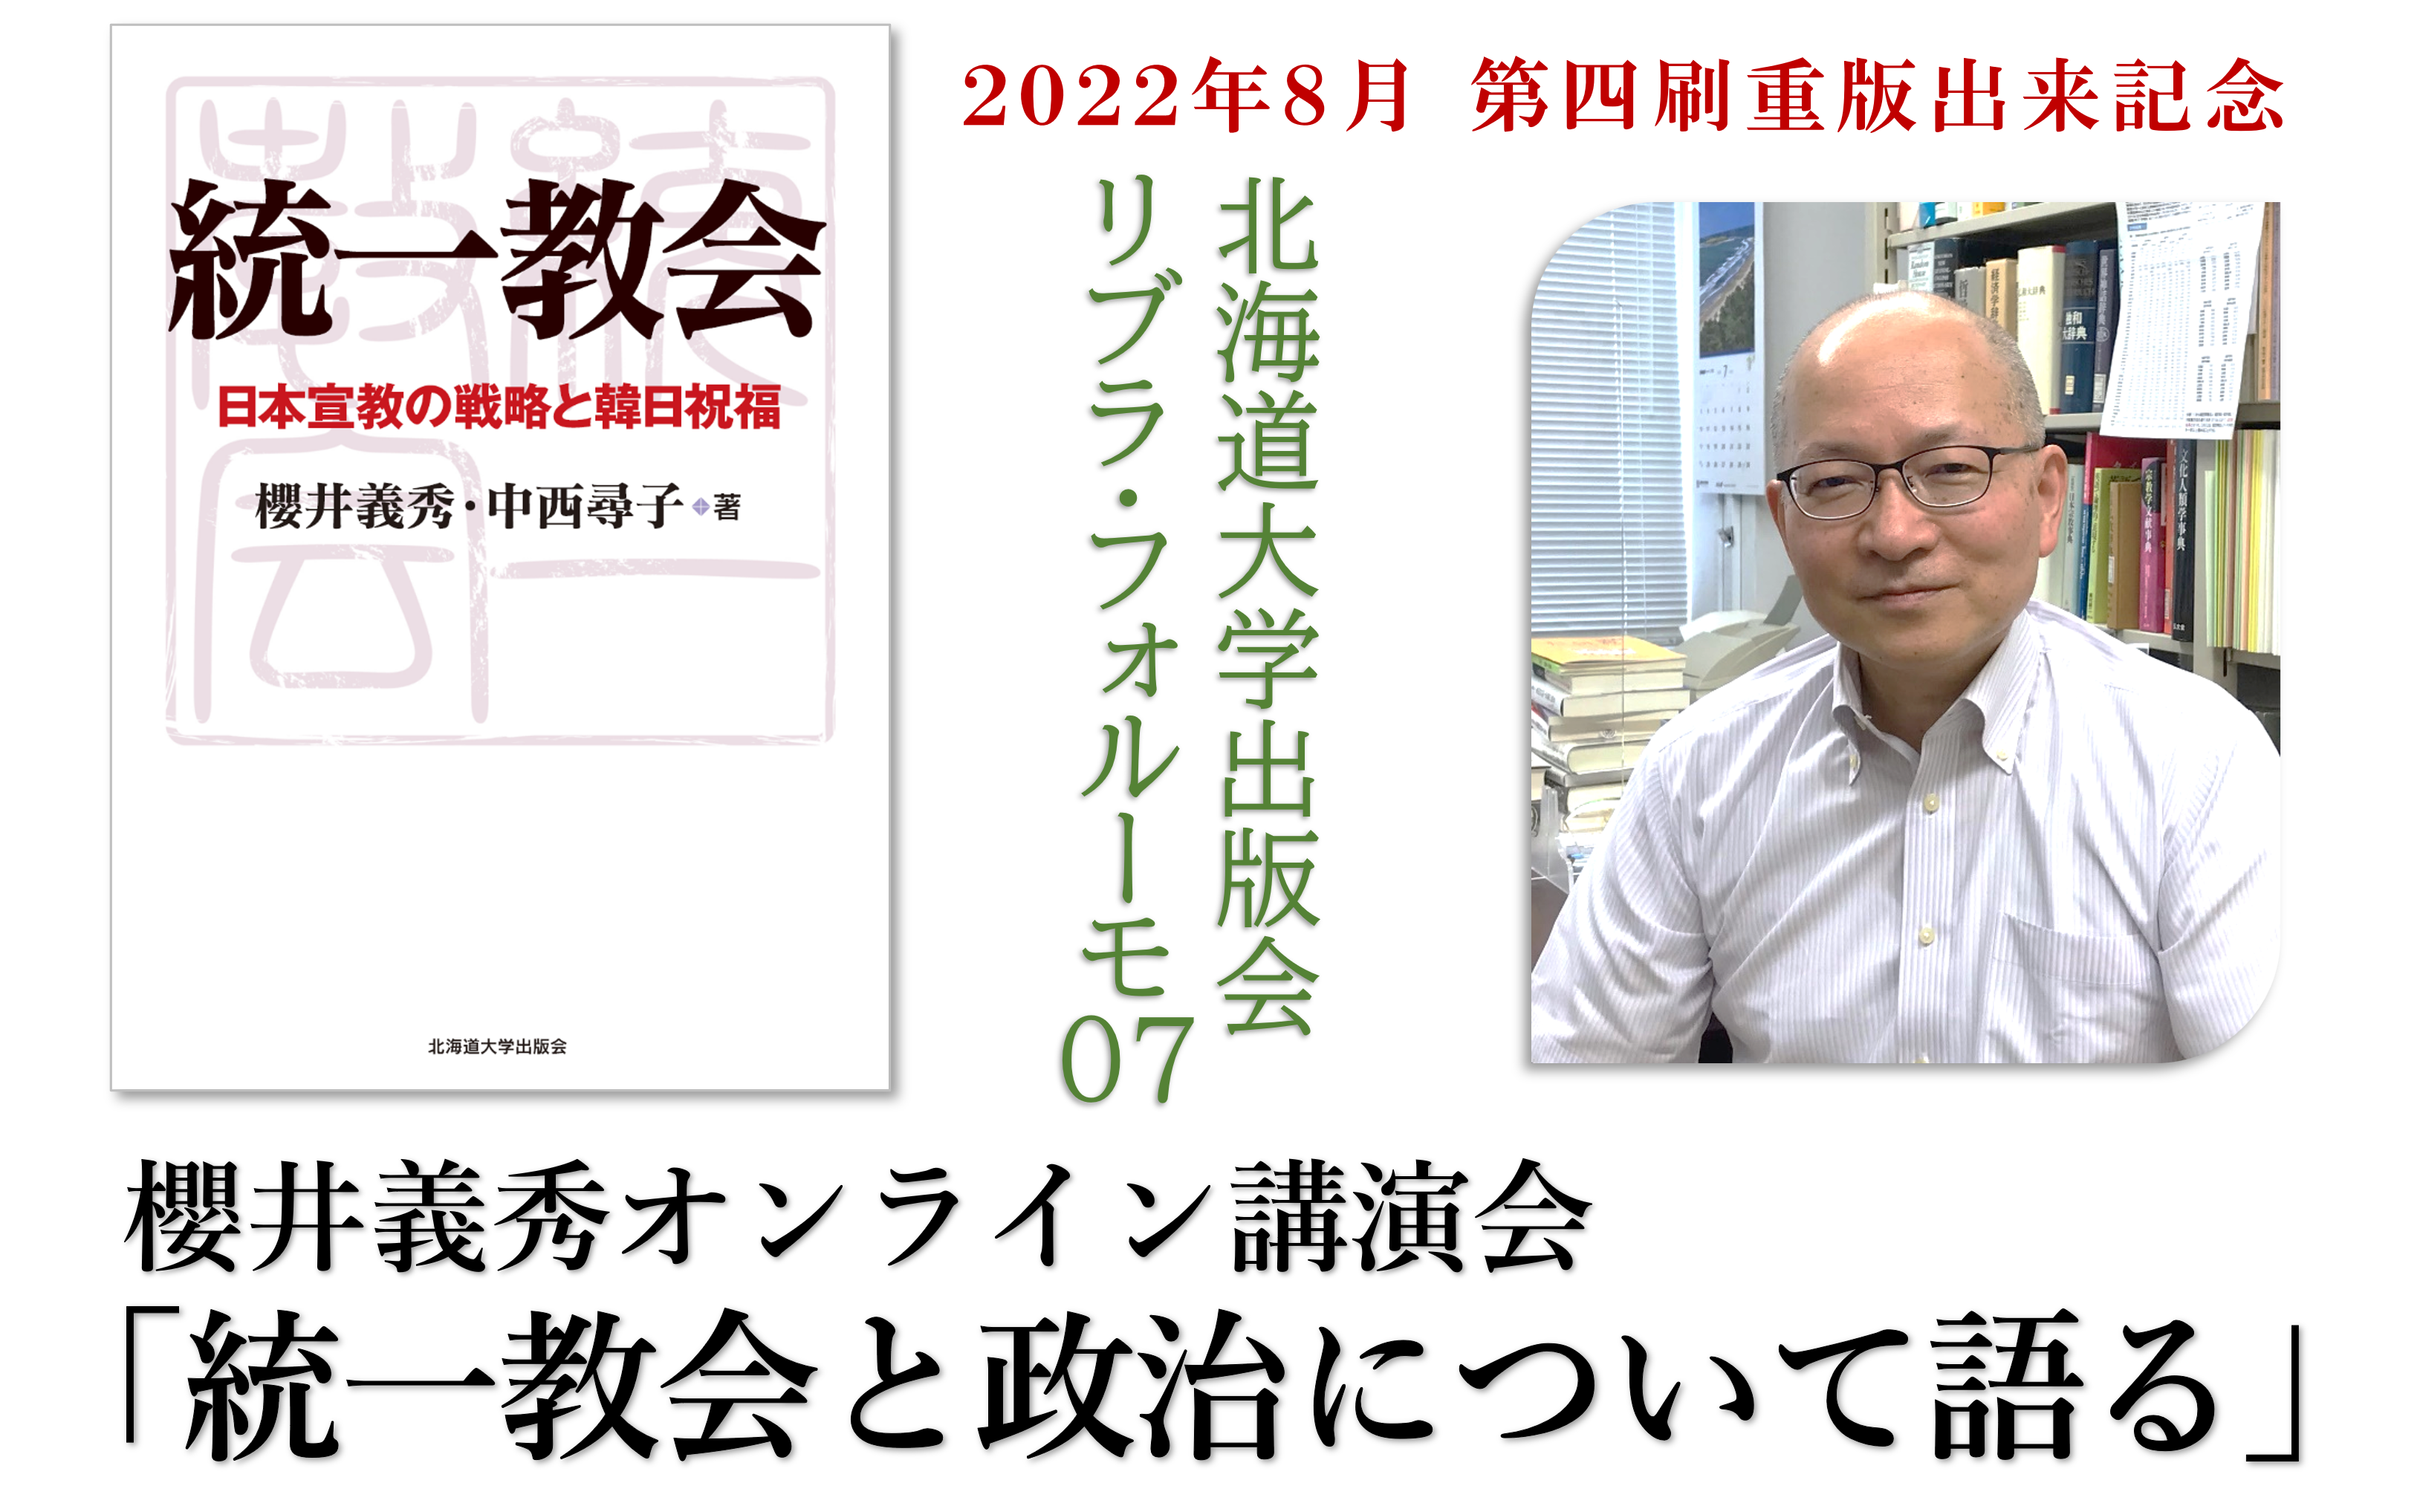 【終了しました】2022年9月1日　櫻井義秀オンライン講演会開催のご案内